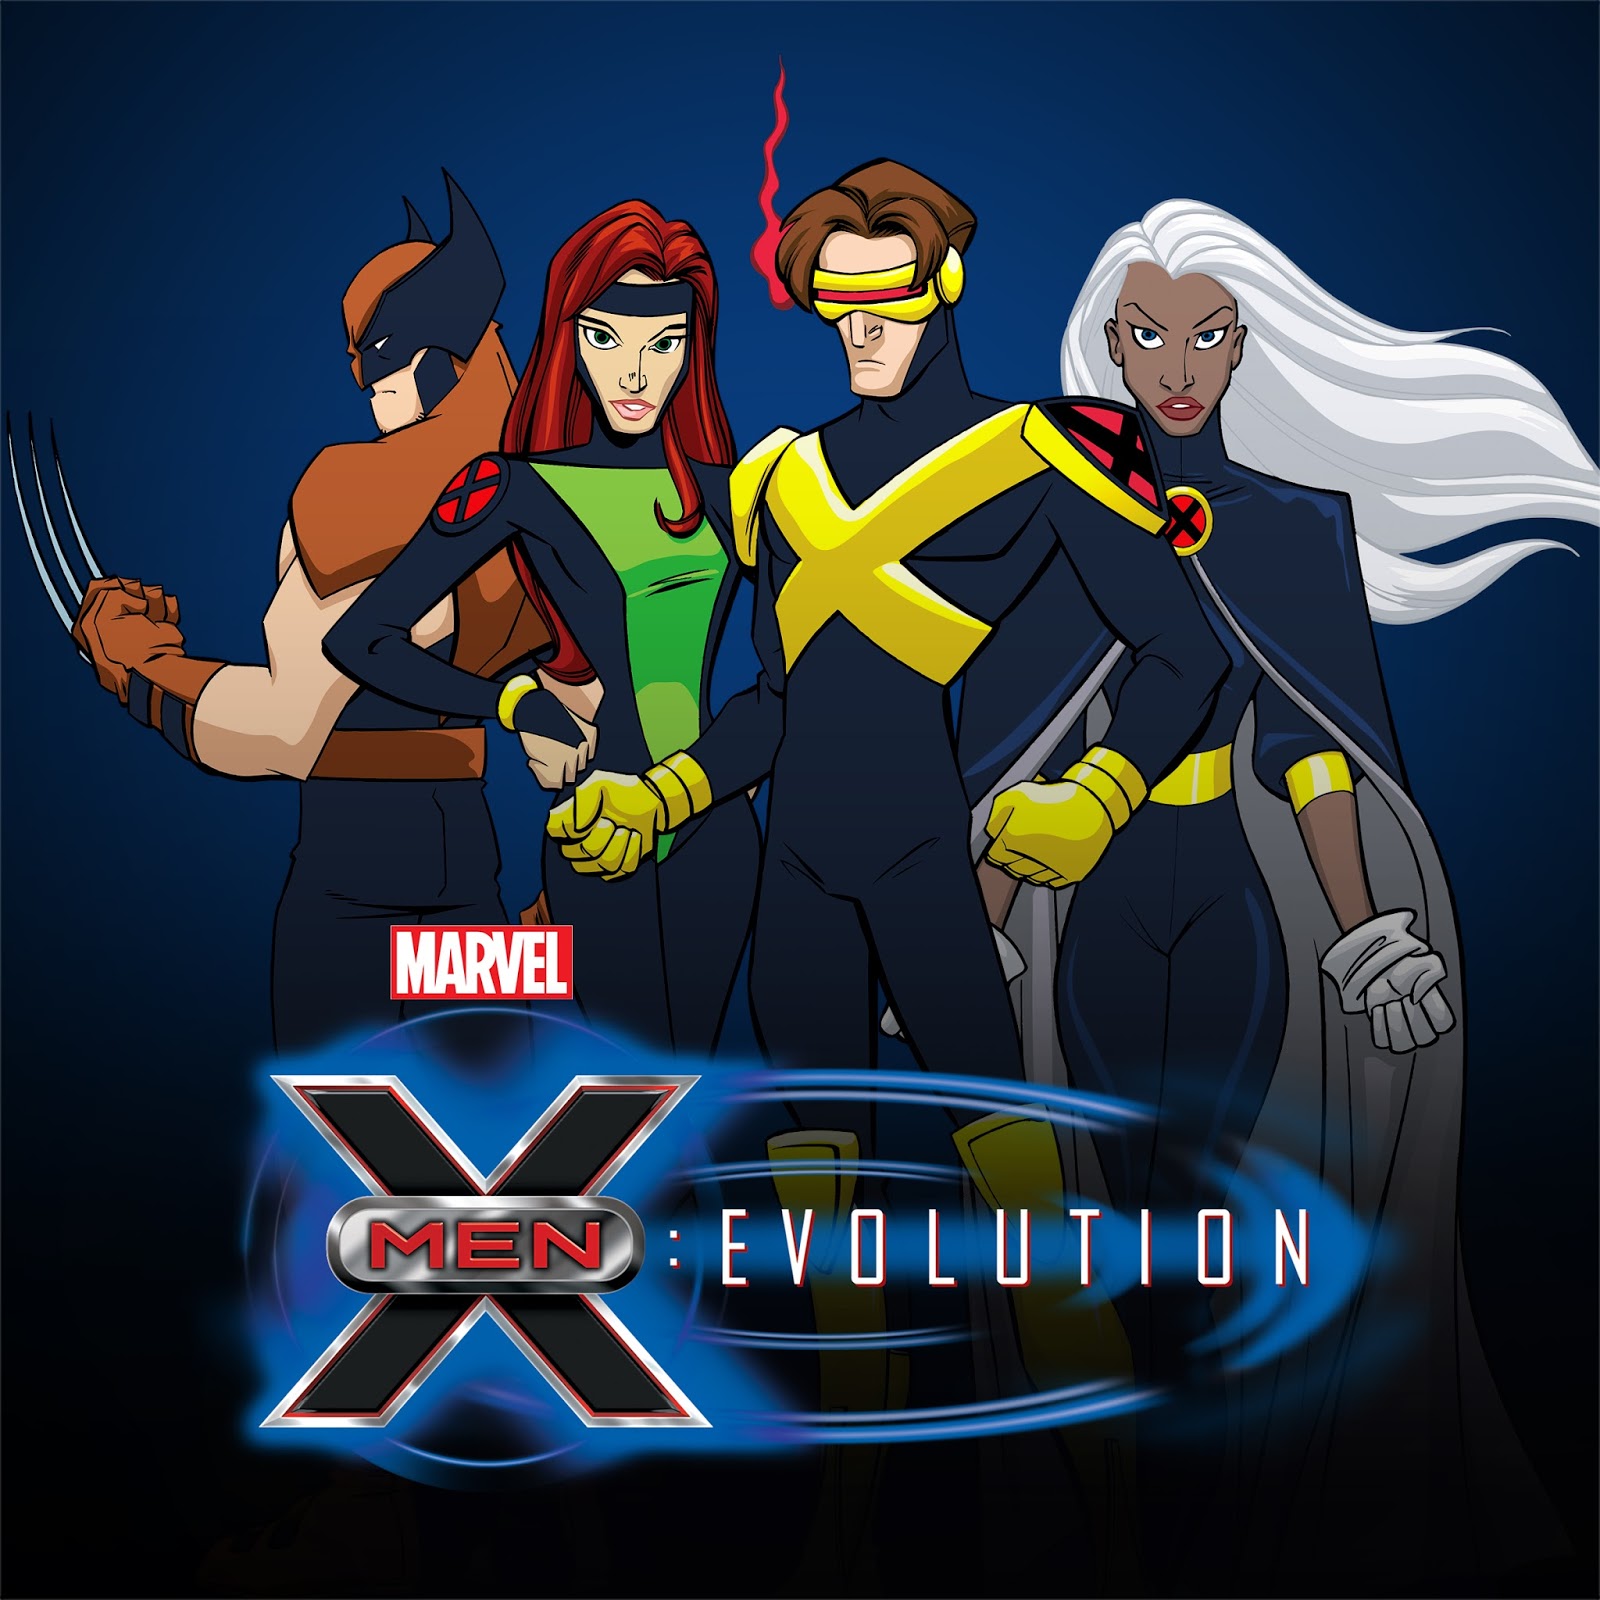 X-men: Evolution Art